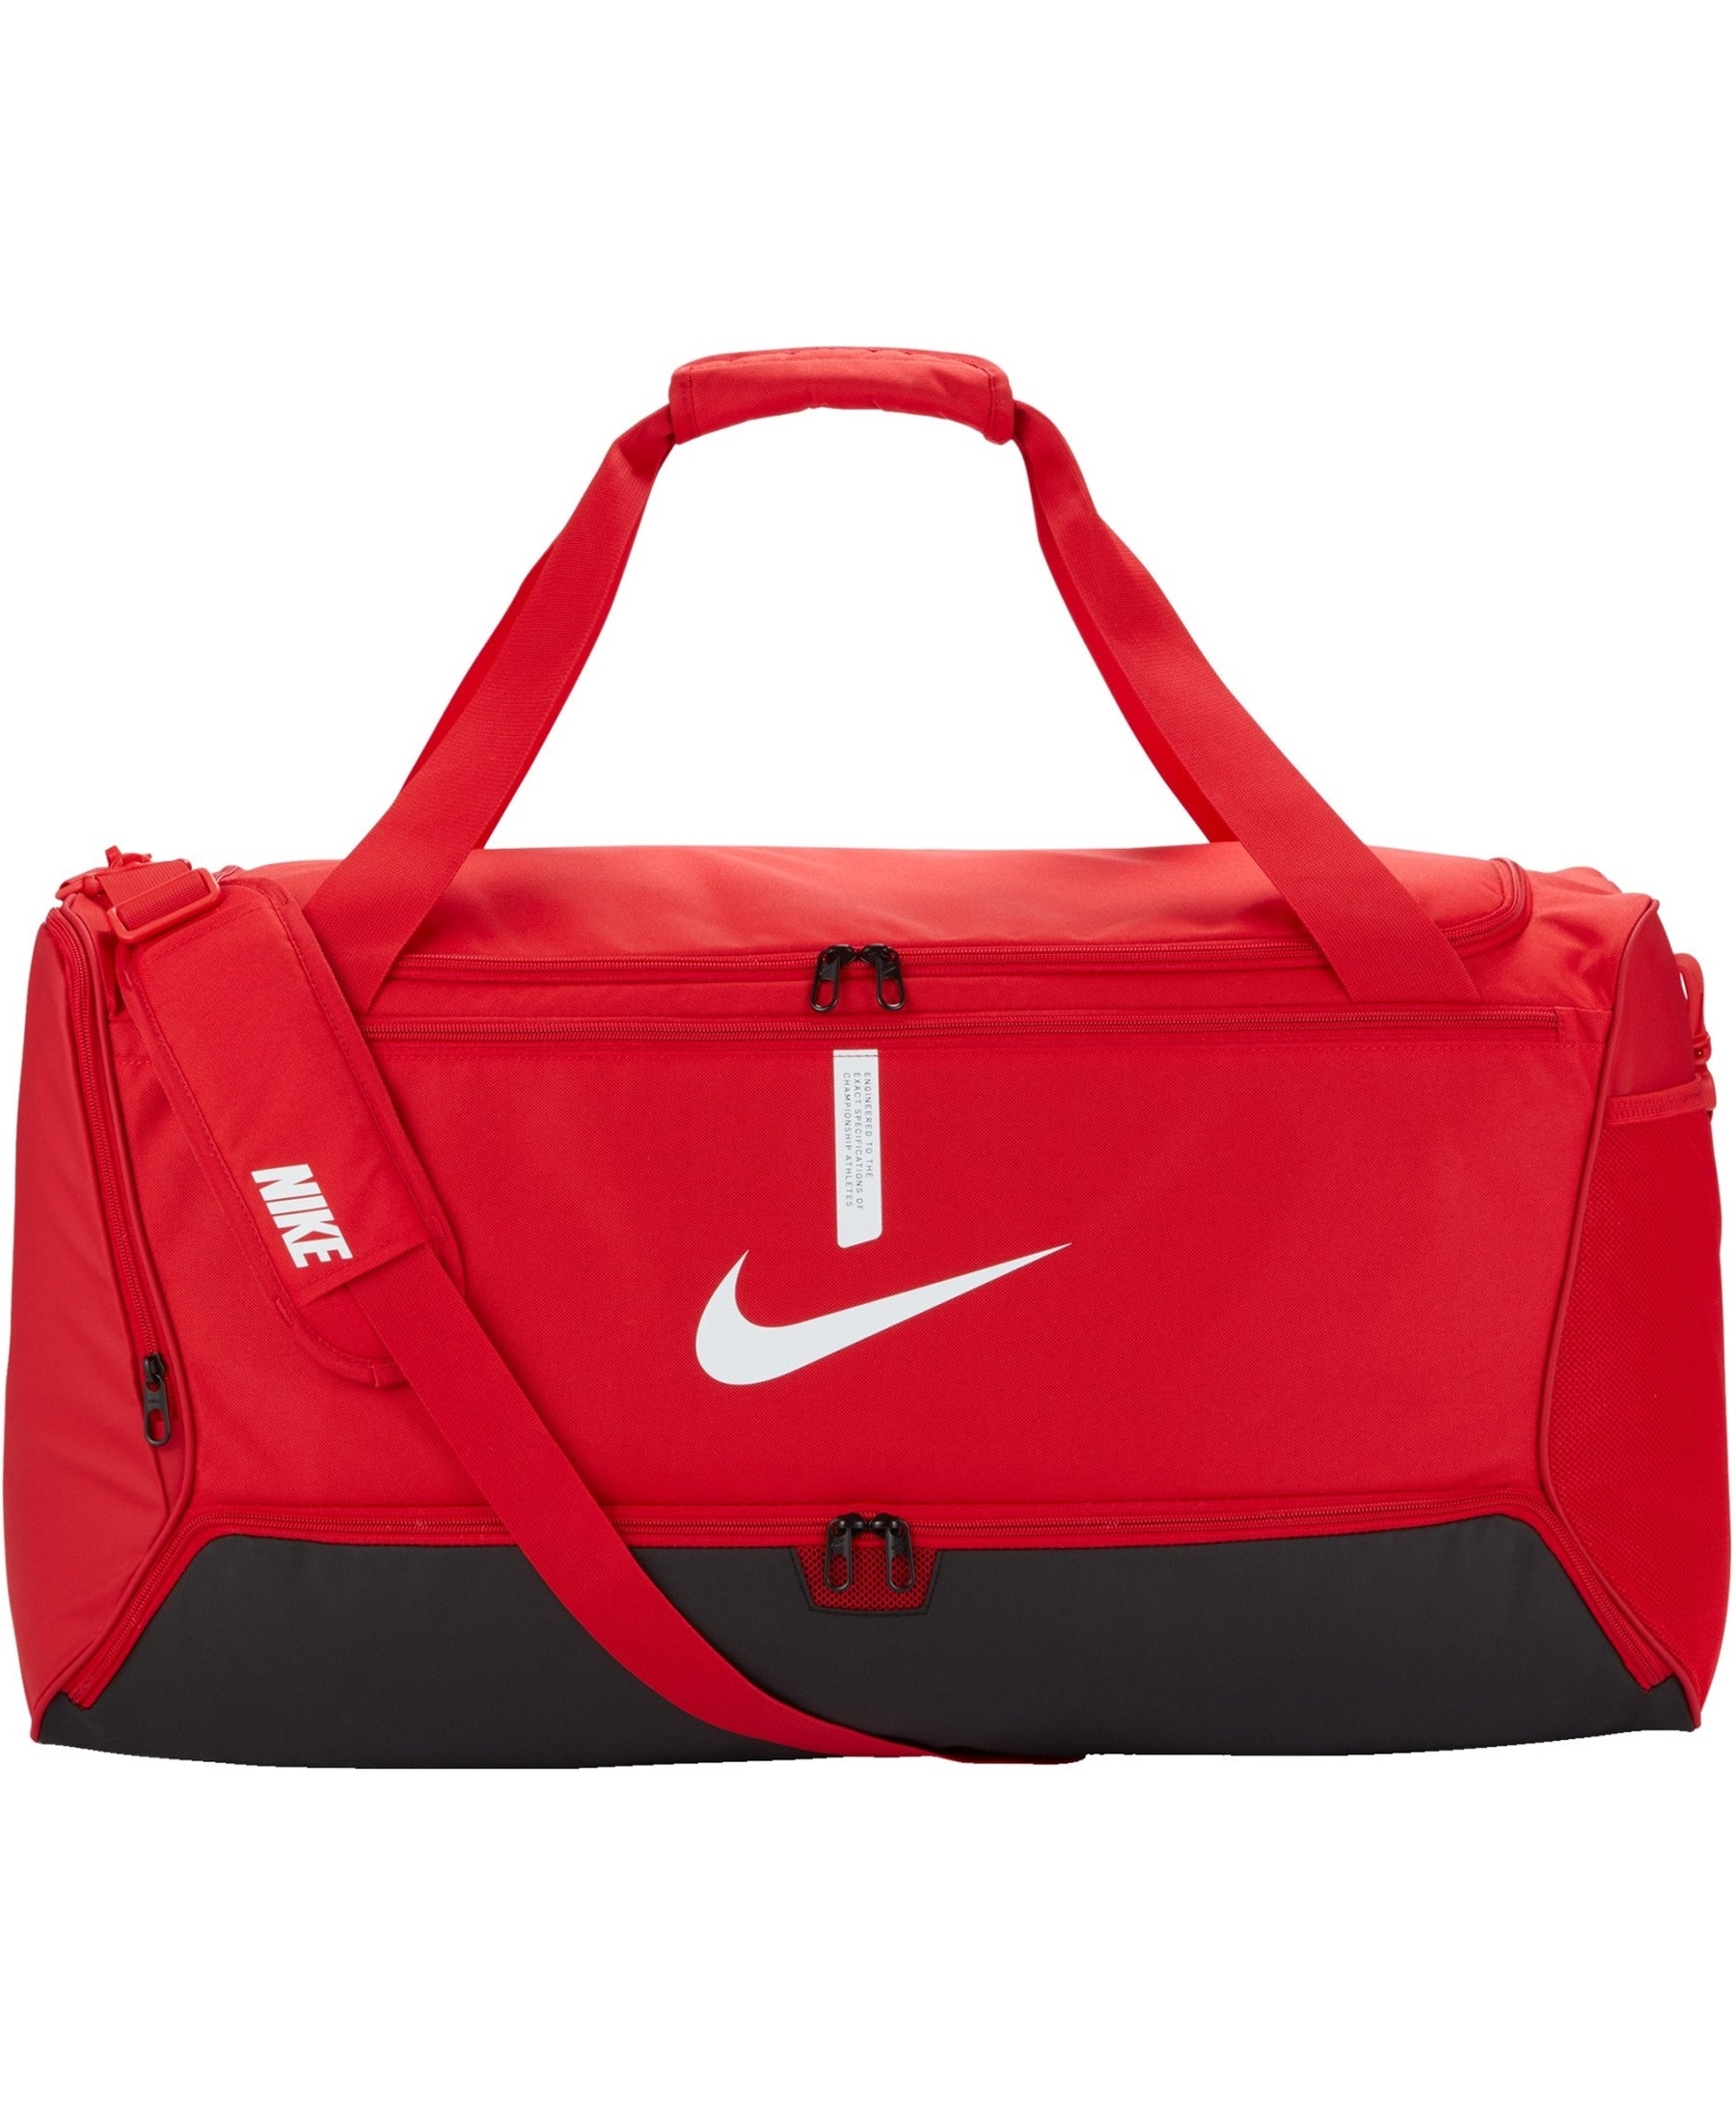 Die Nike Academy Team Duffle Tasche L (CU8089-657) - eine geräumige und funktionale Sporttasche mit Bodenfach, perfekt für den Sport und Alltag. Die ideale Wahl für Sportler und Fitness-Enthusiasten, die auf Qualität und Stil setzen. Bestellen Sie jetzt bei SHOP4TEAMSPORT und seien Sie bestens ausgestattet!